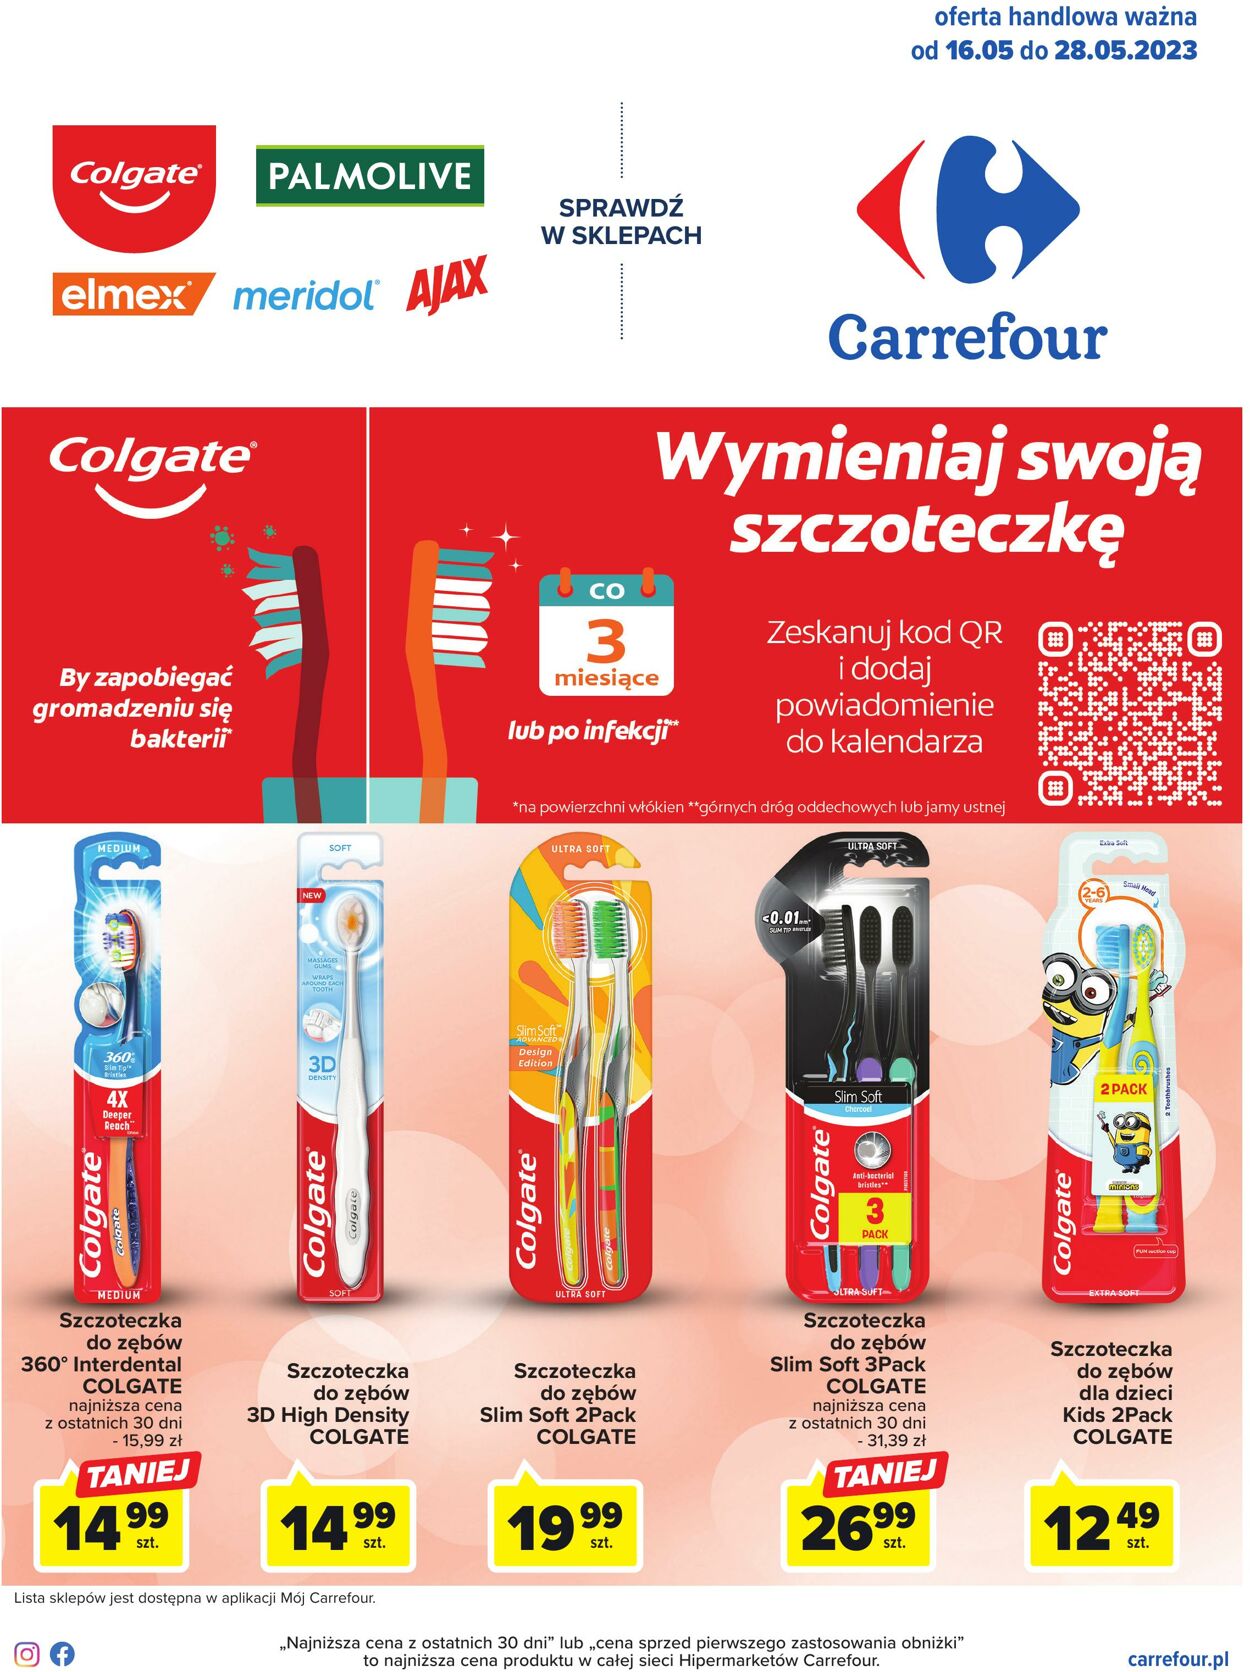 Gazetka Carrefour 16.05.2023 - 28.05.2023